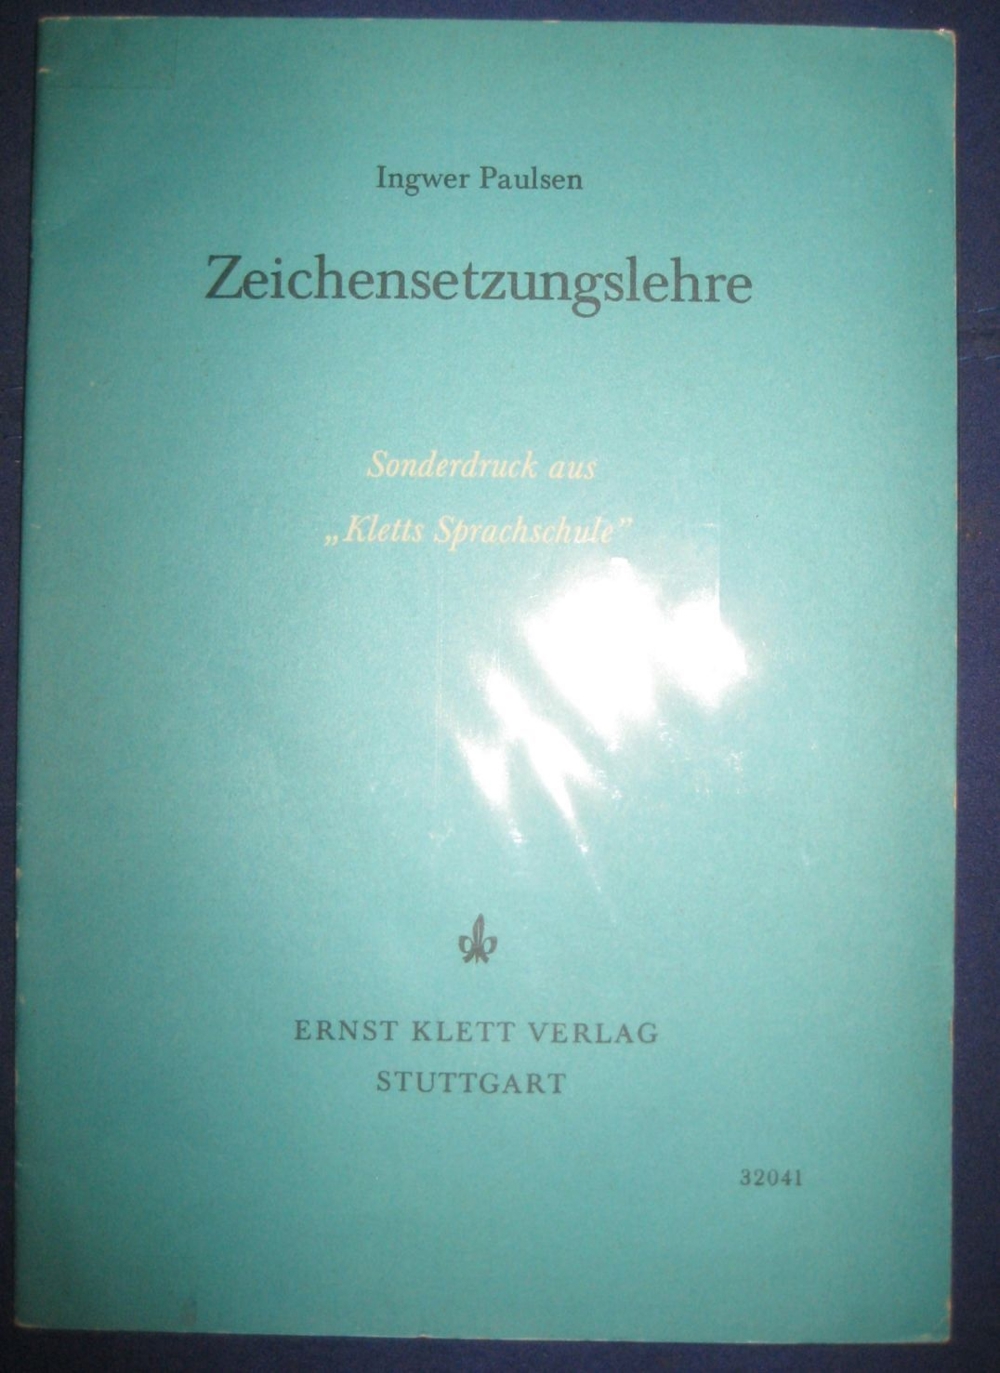  Zeichensetzungslehre von Ingwer Paulsen, 24 Seiten, Ernst Klett Verlag Stuttgart, stammt aus 1960